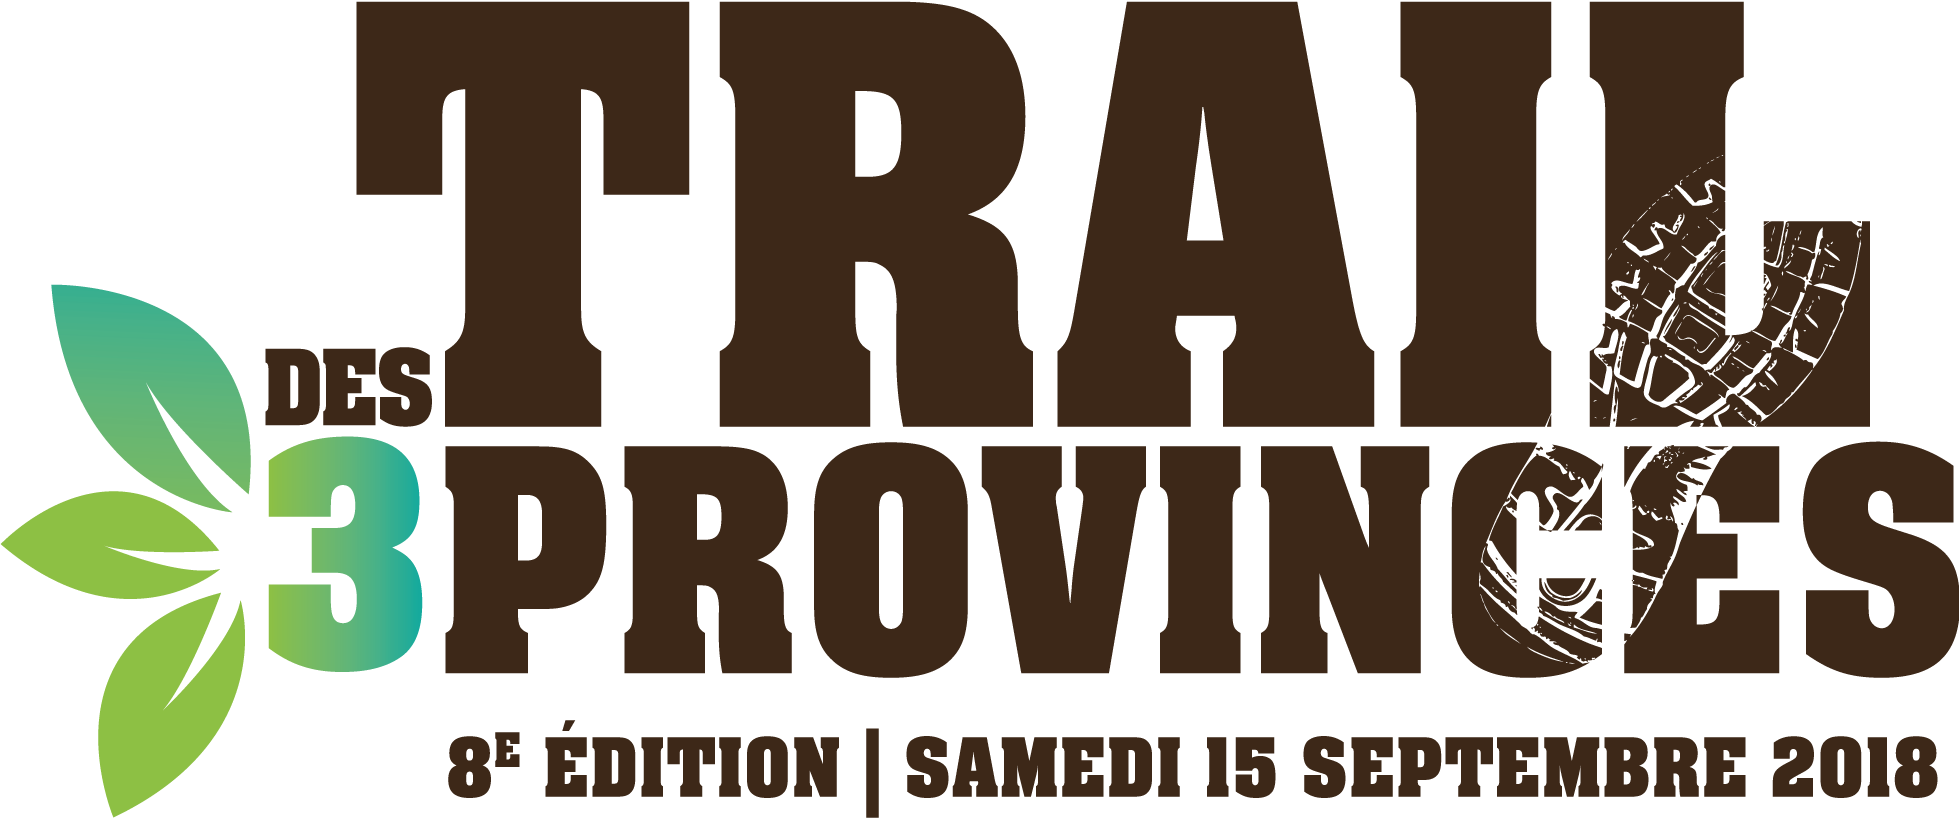 Trail 3 Provinces